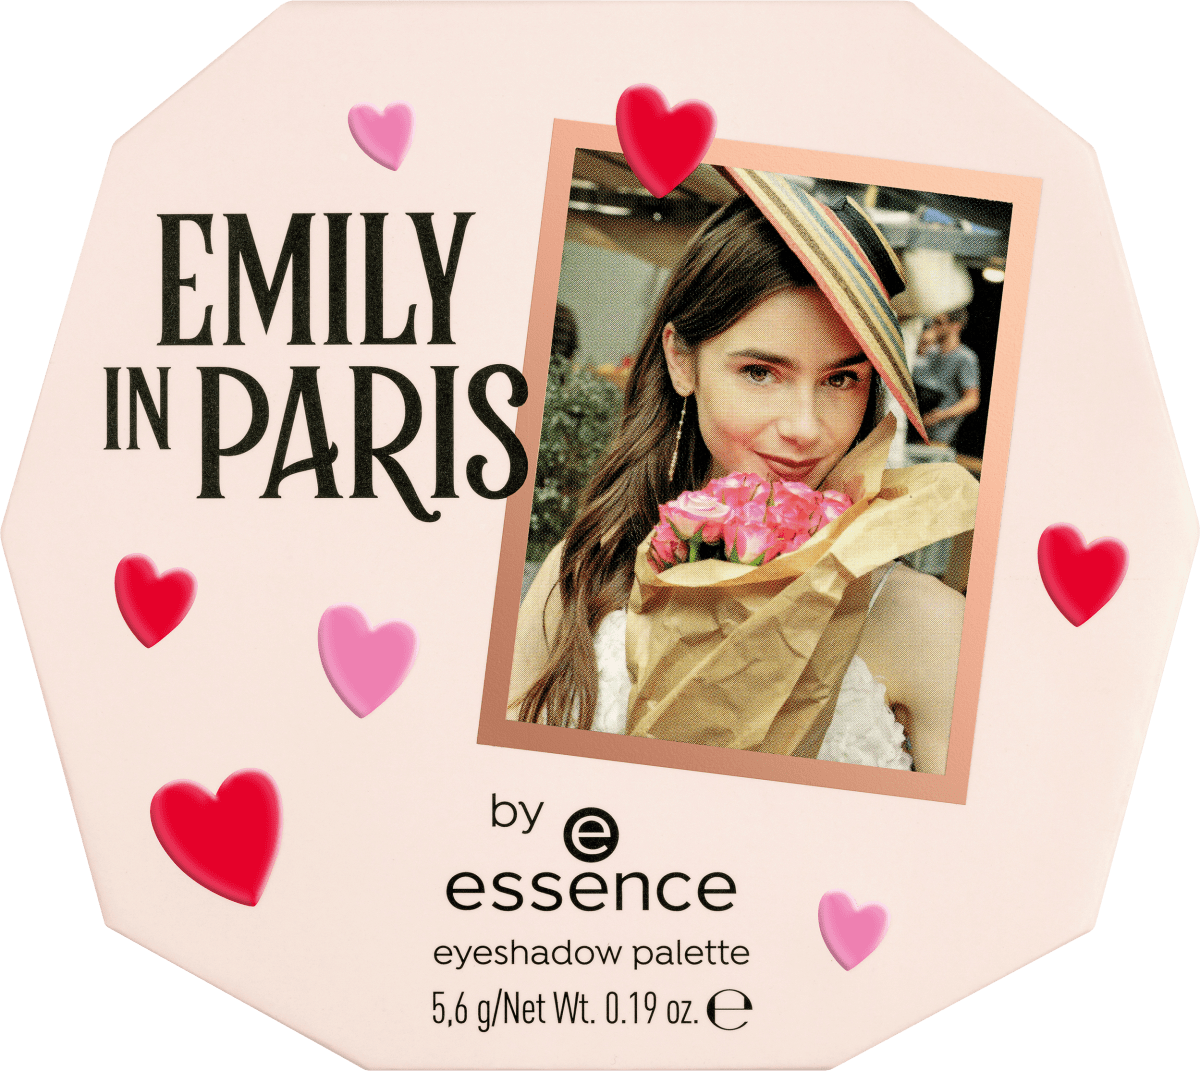 essence At dauerhaft 5,6 essence 01 kaufen online Tower, Emily Eiffel g Paris in günstig The Meet Me by Lidschattenpalette